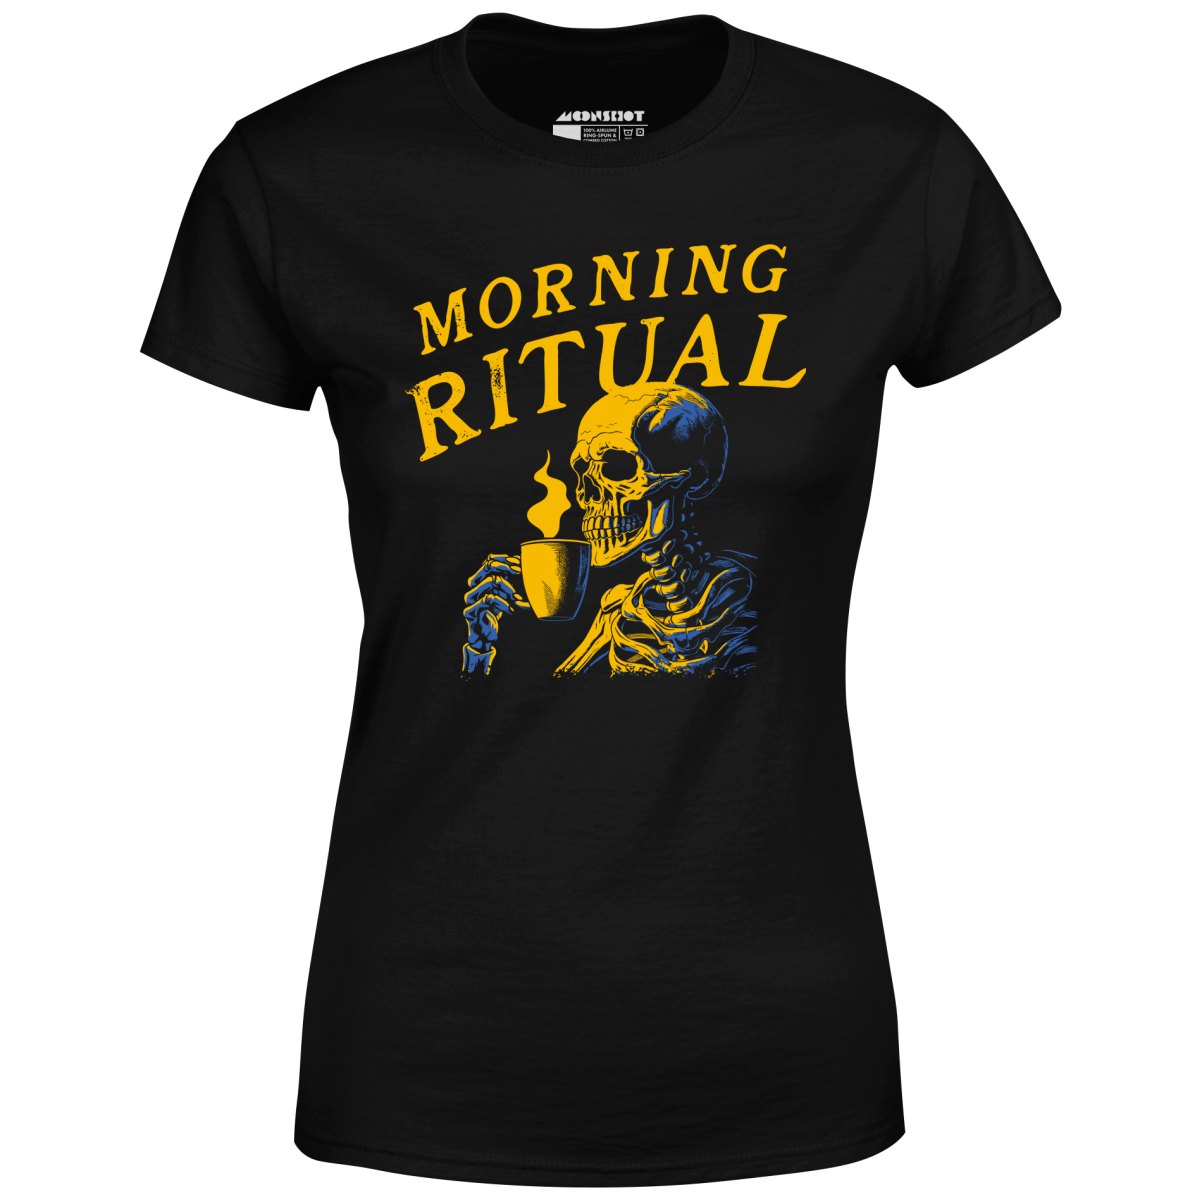 Morning Ritual - Women's T-Shirt